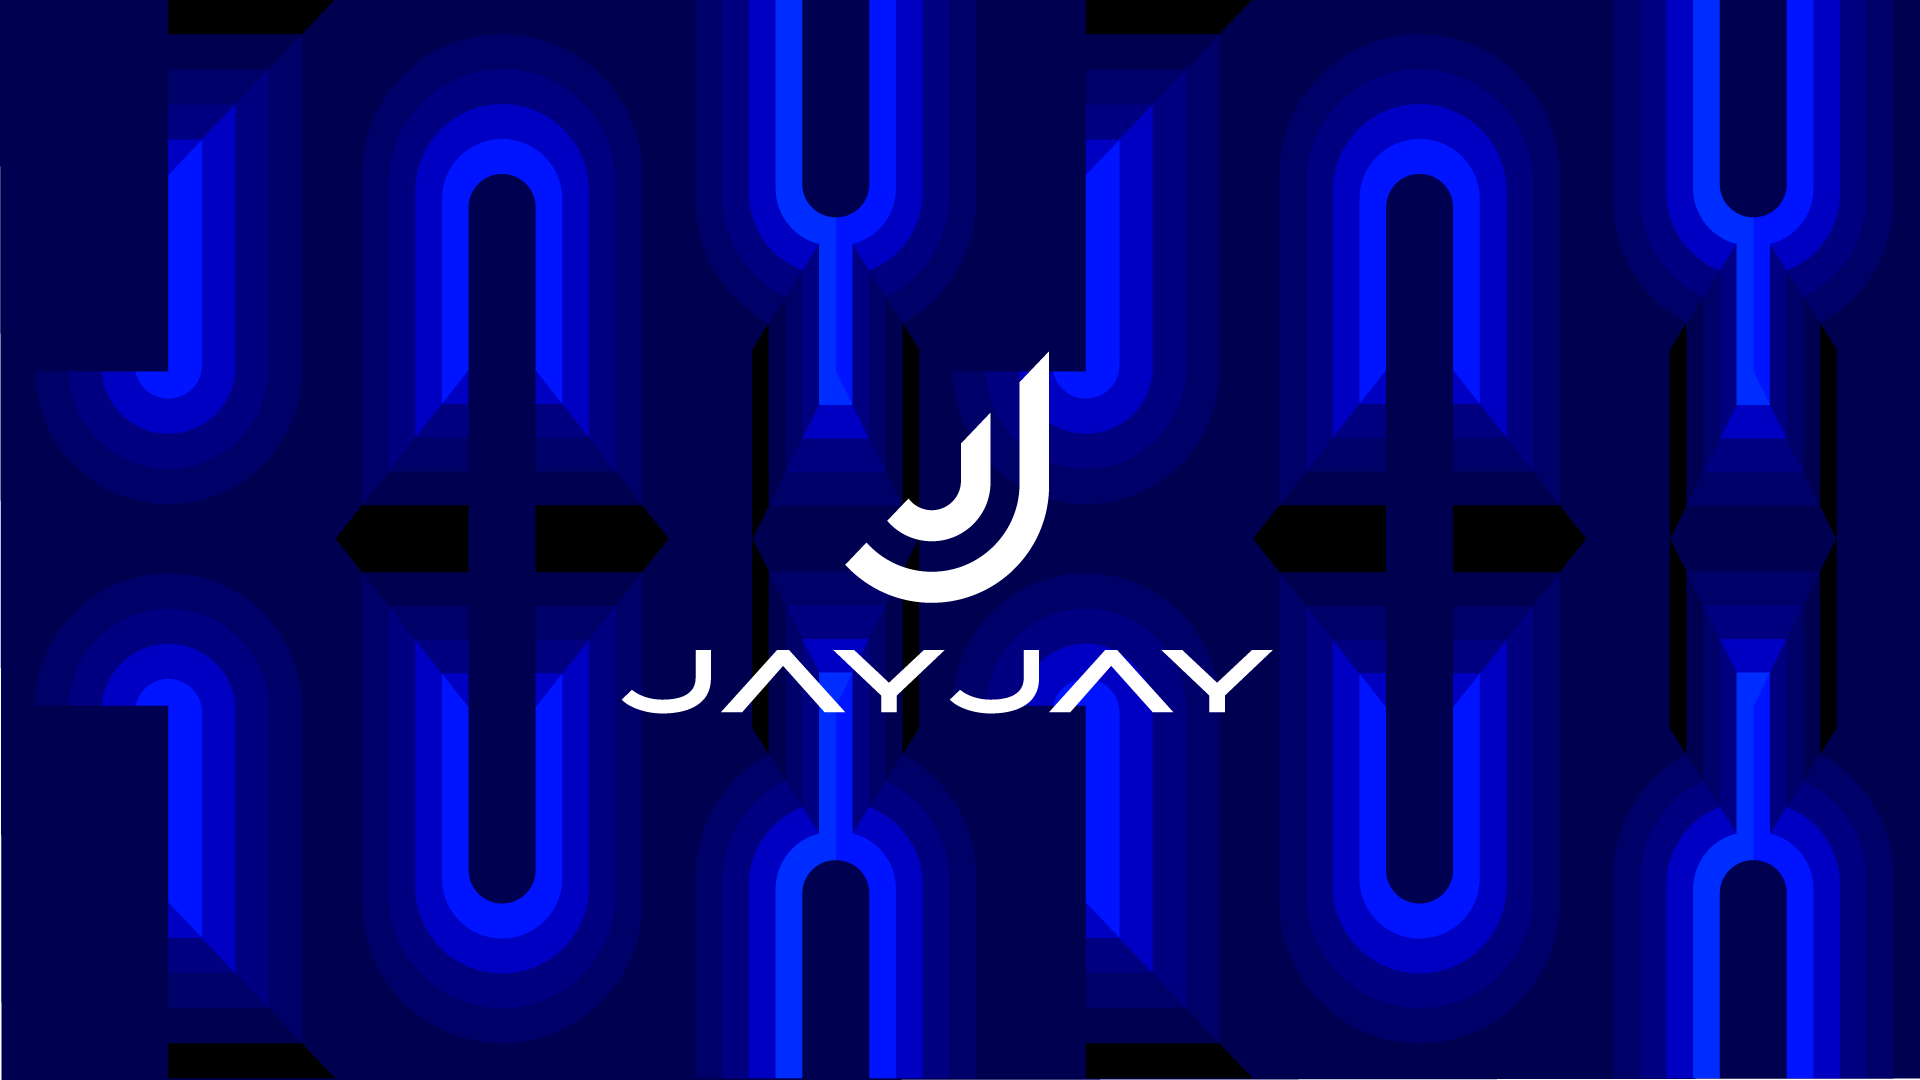 Jay Jay